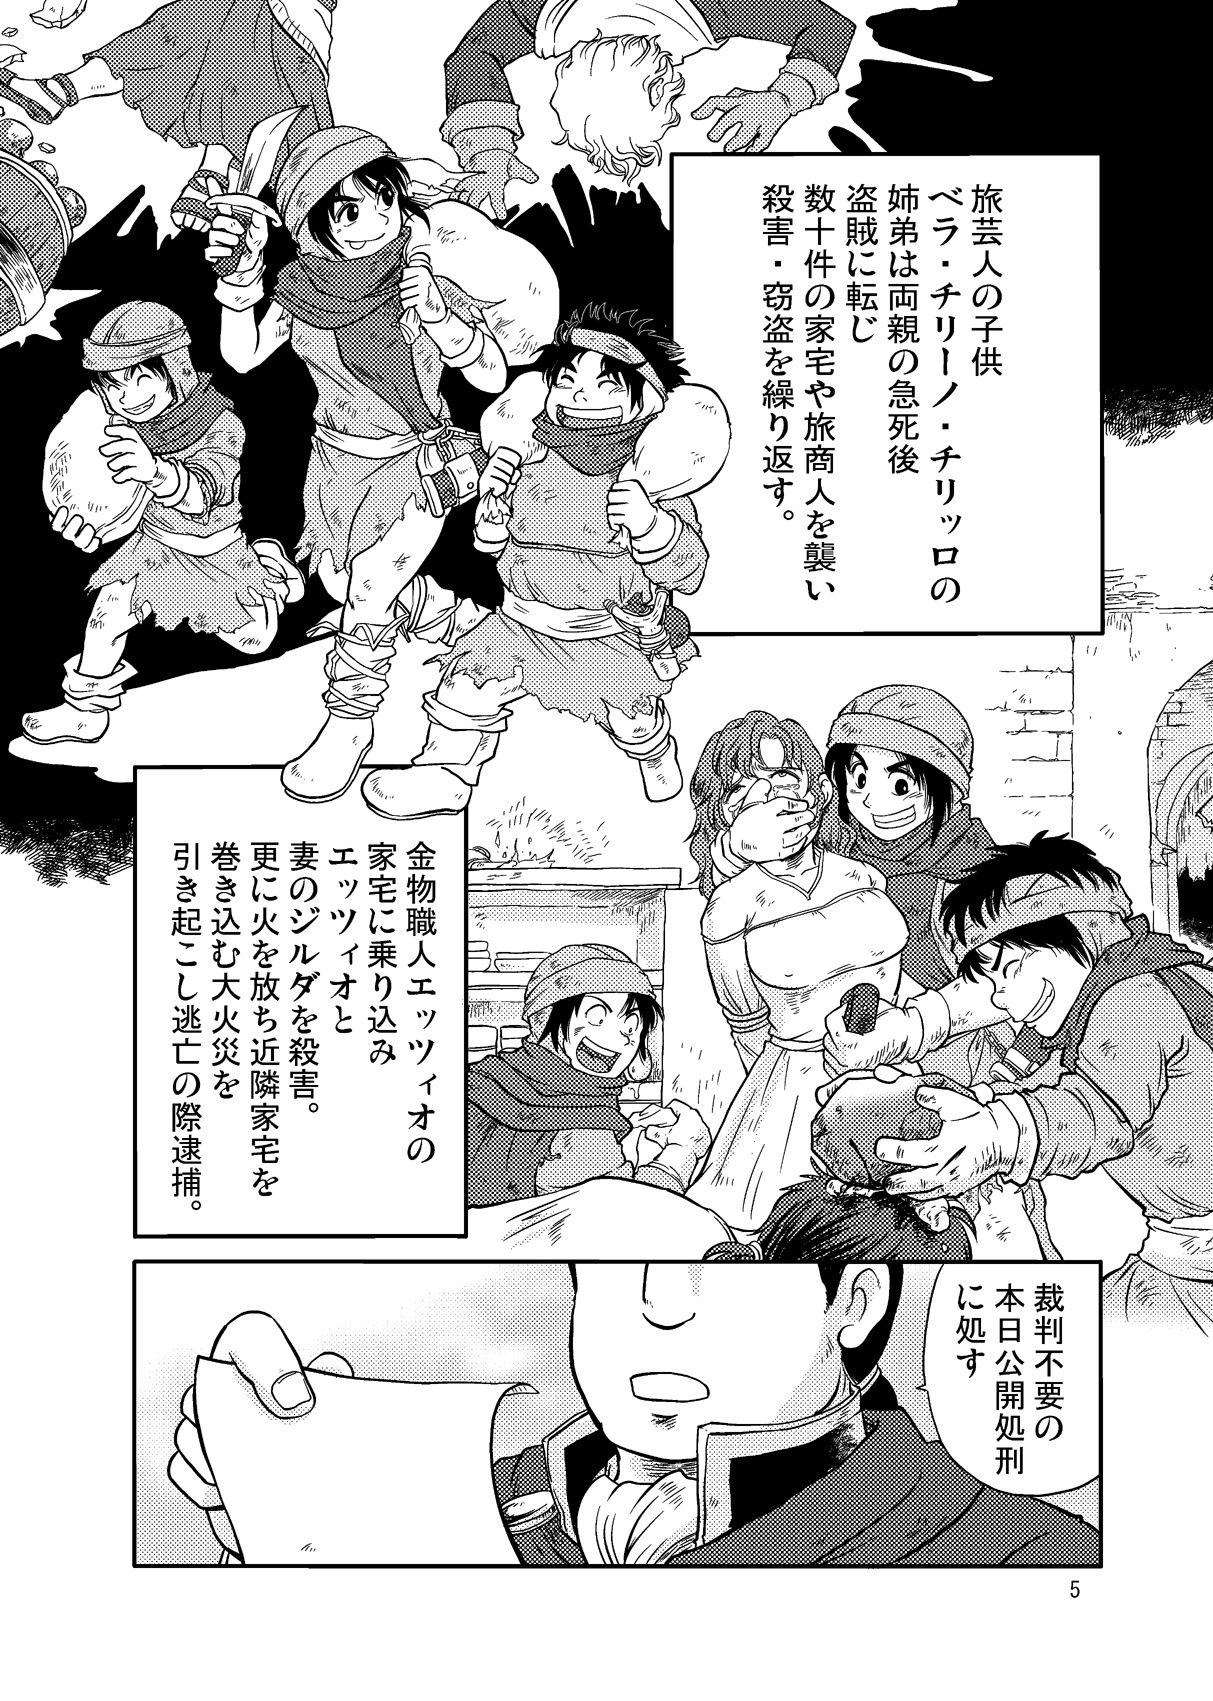 Reverse Meoto Keiri 3 Bondagesex - Page 5